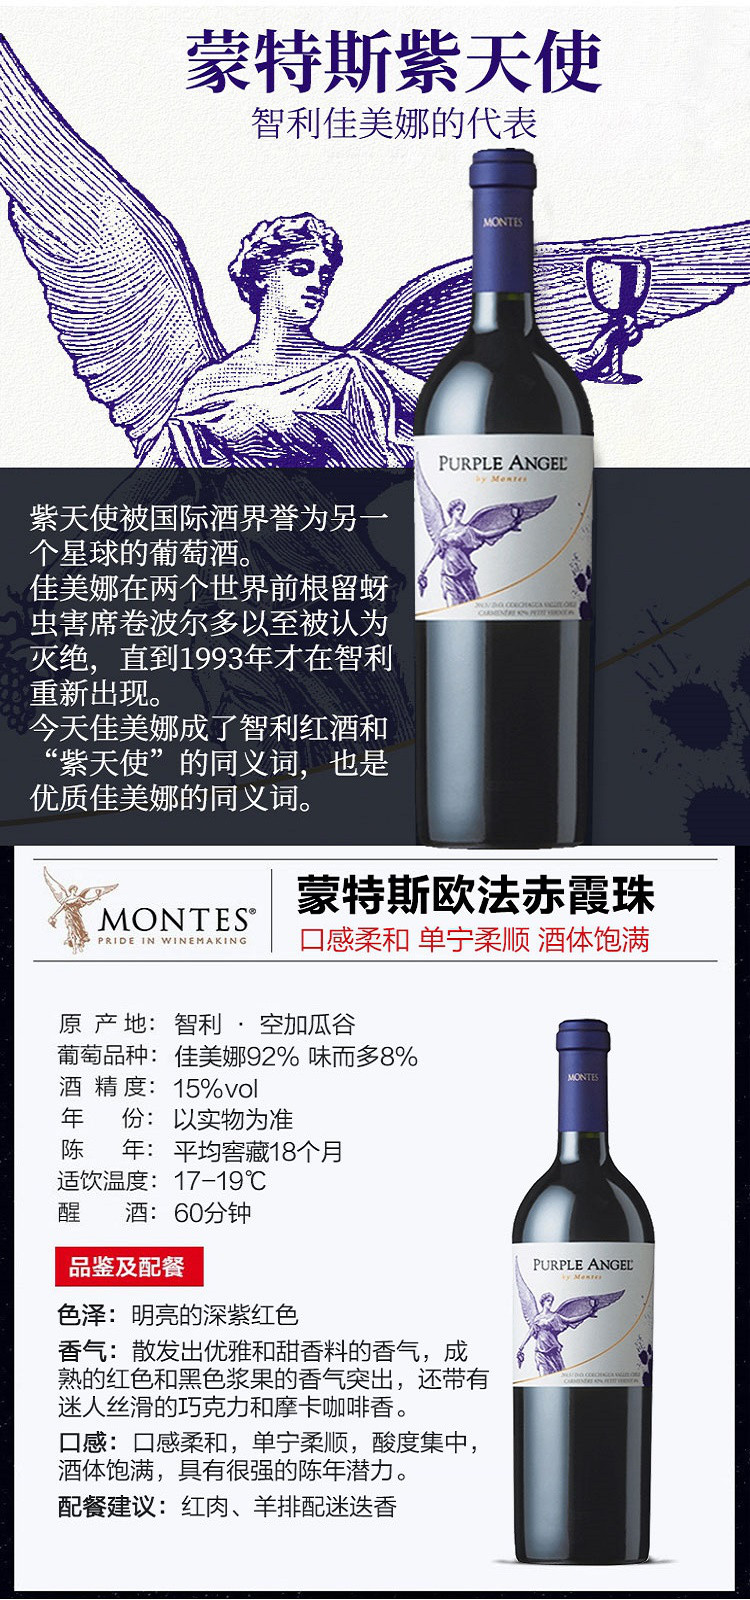 蒙特斯三剑客富乐 欧法m 紫天使 750ml/瓶智利进口红酒